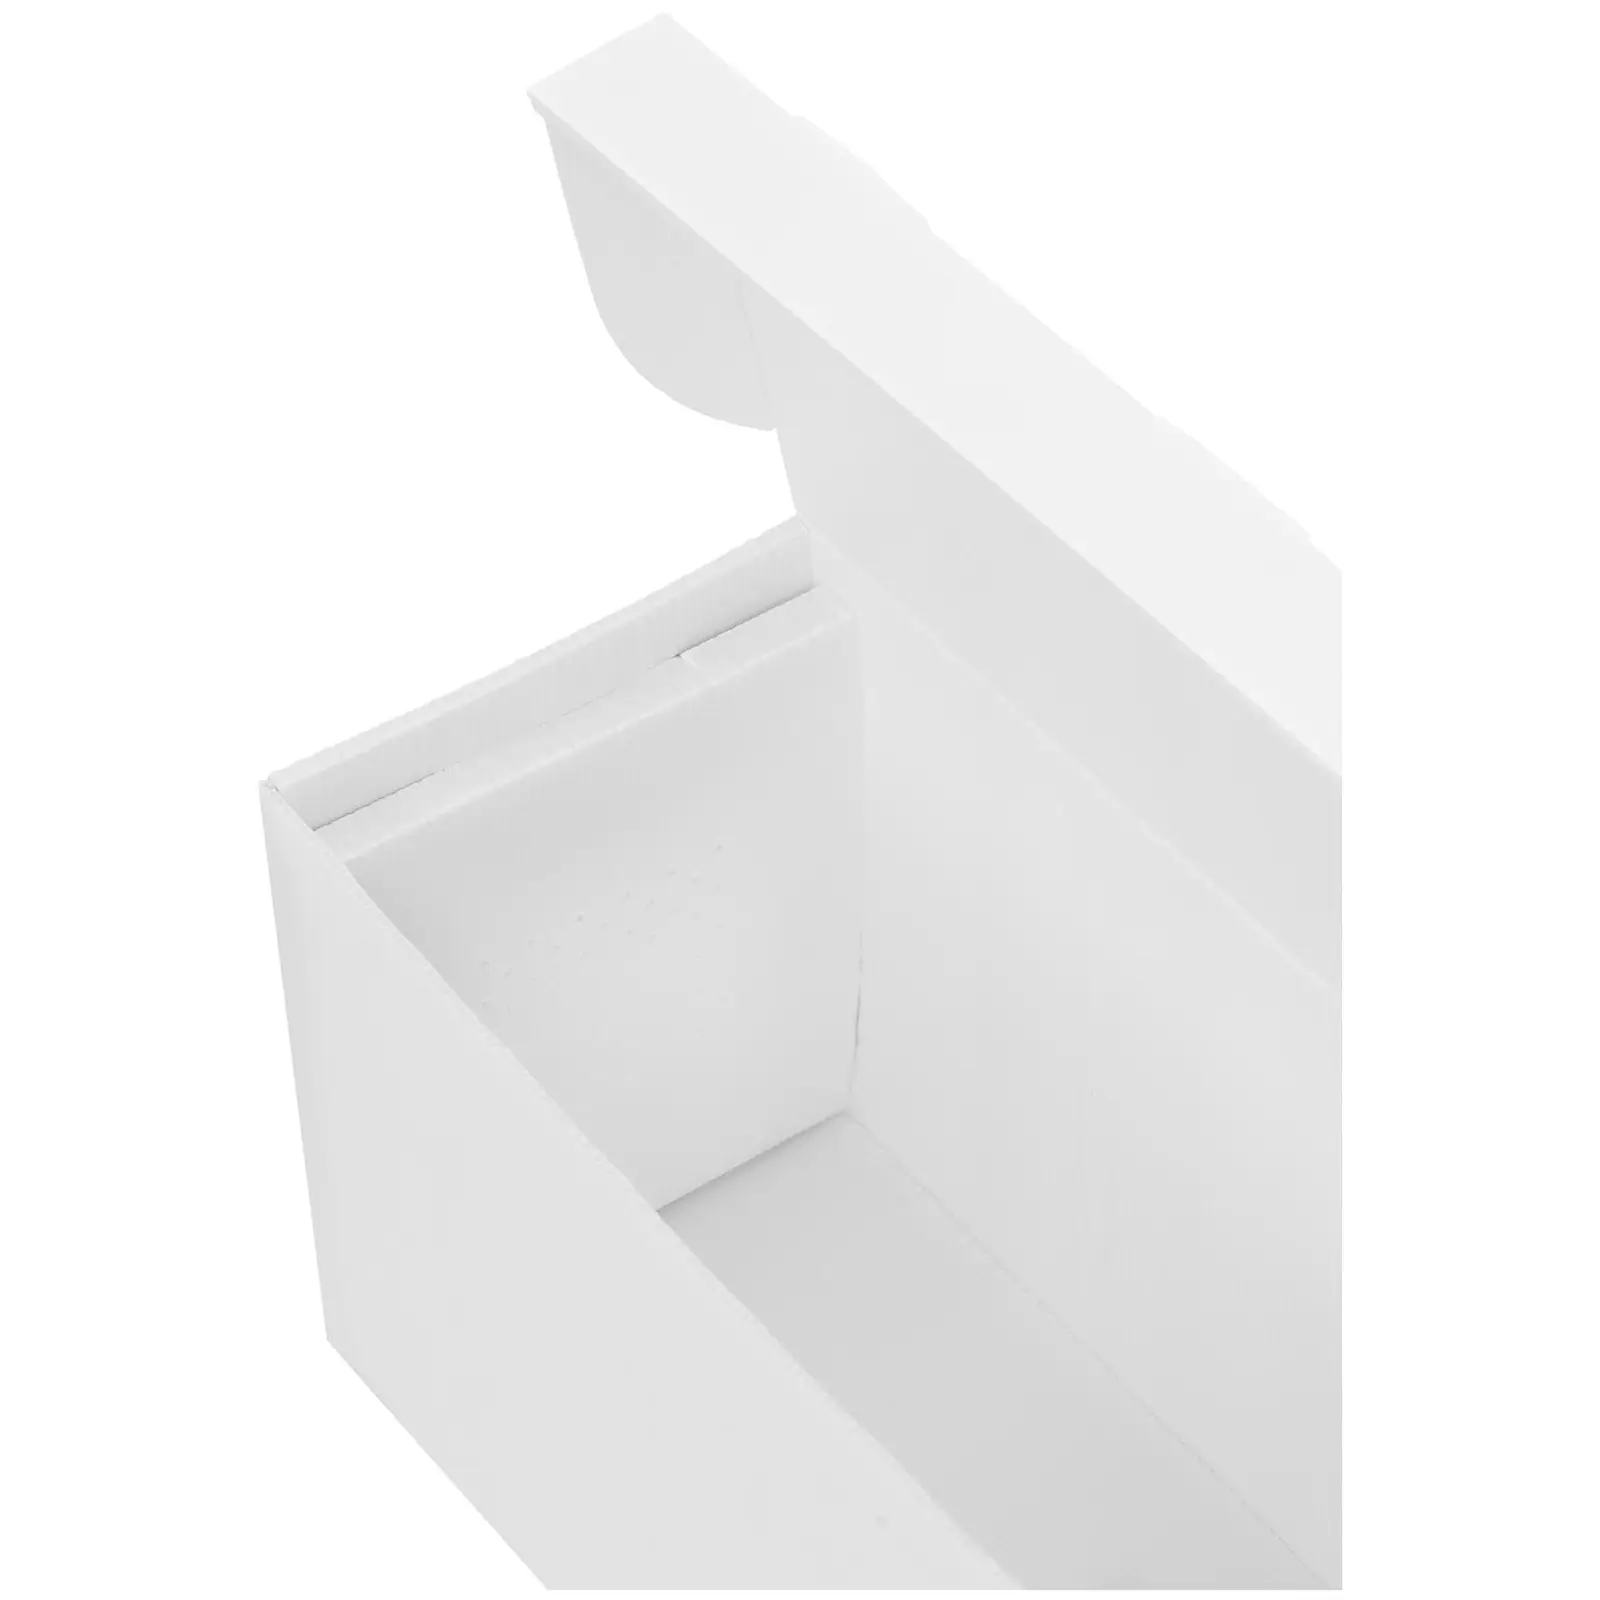 Langstroth Nuc Box - laget av plast (PP) - for 5 rammer